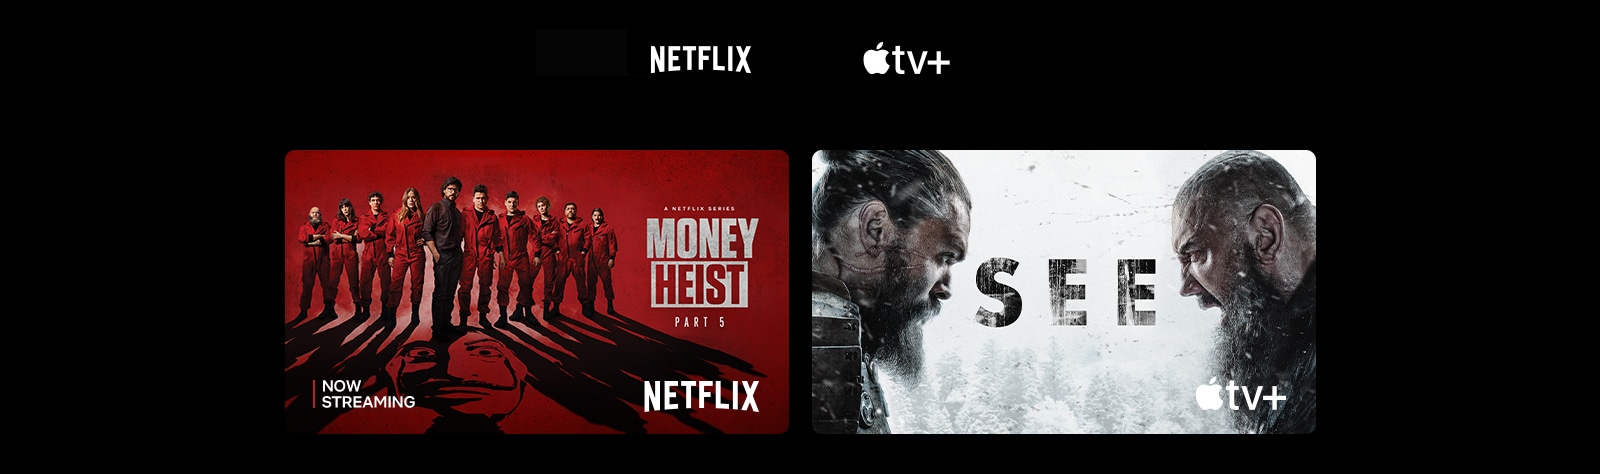 Постер "Money Heist" от Netflix, и "See" от Apple TV Plus.